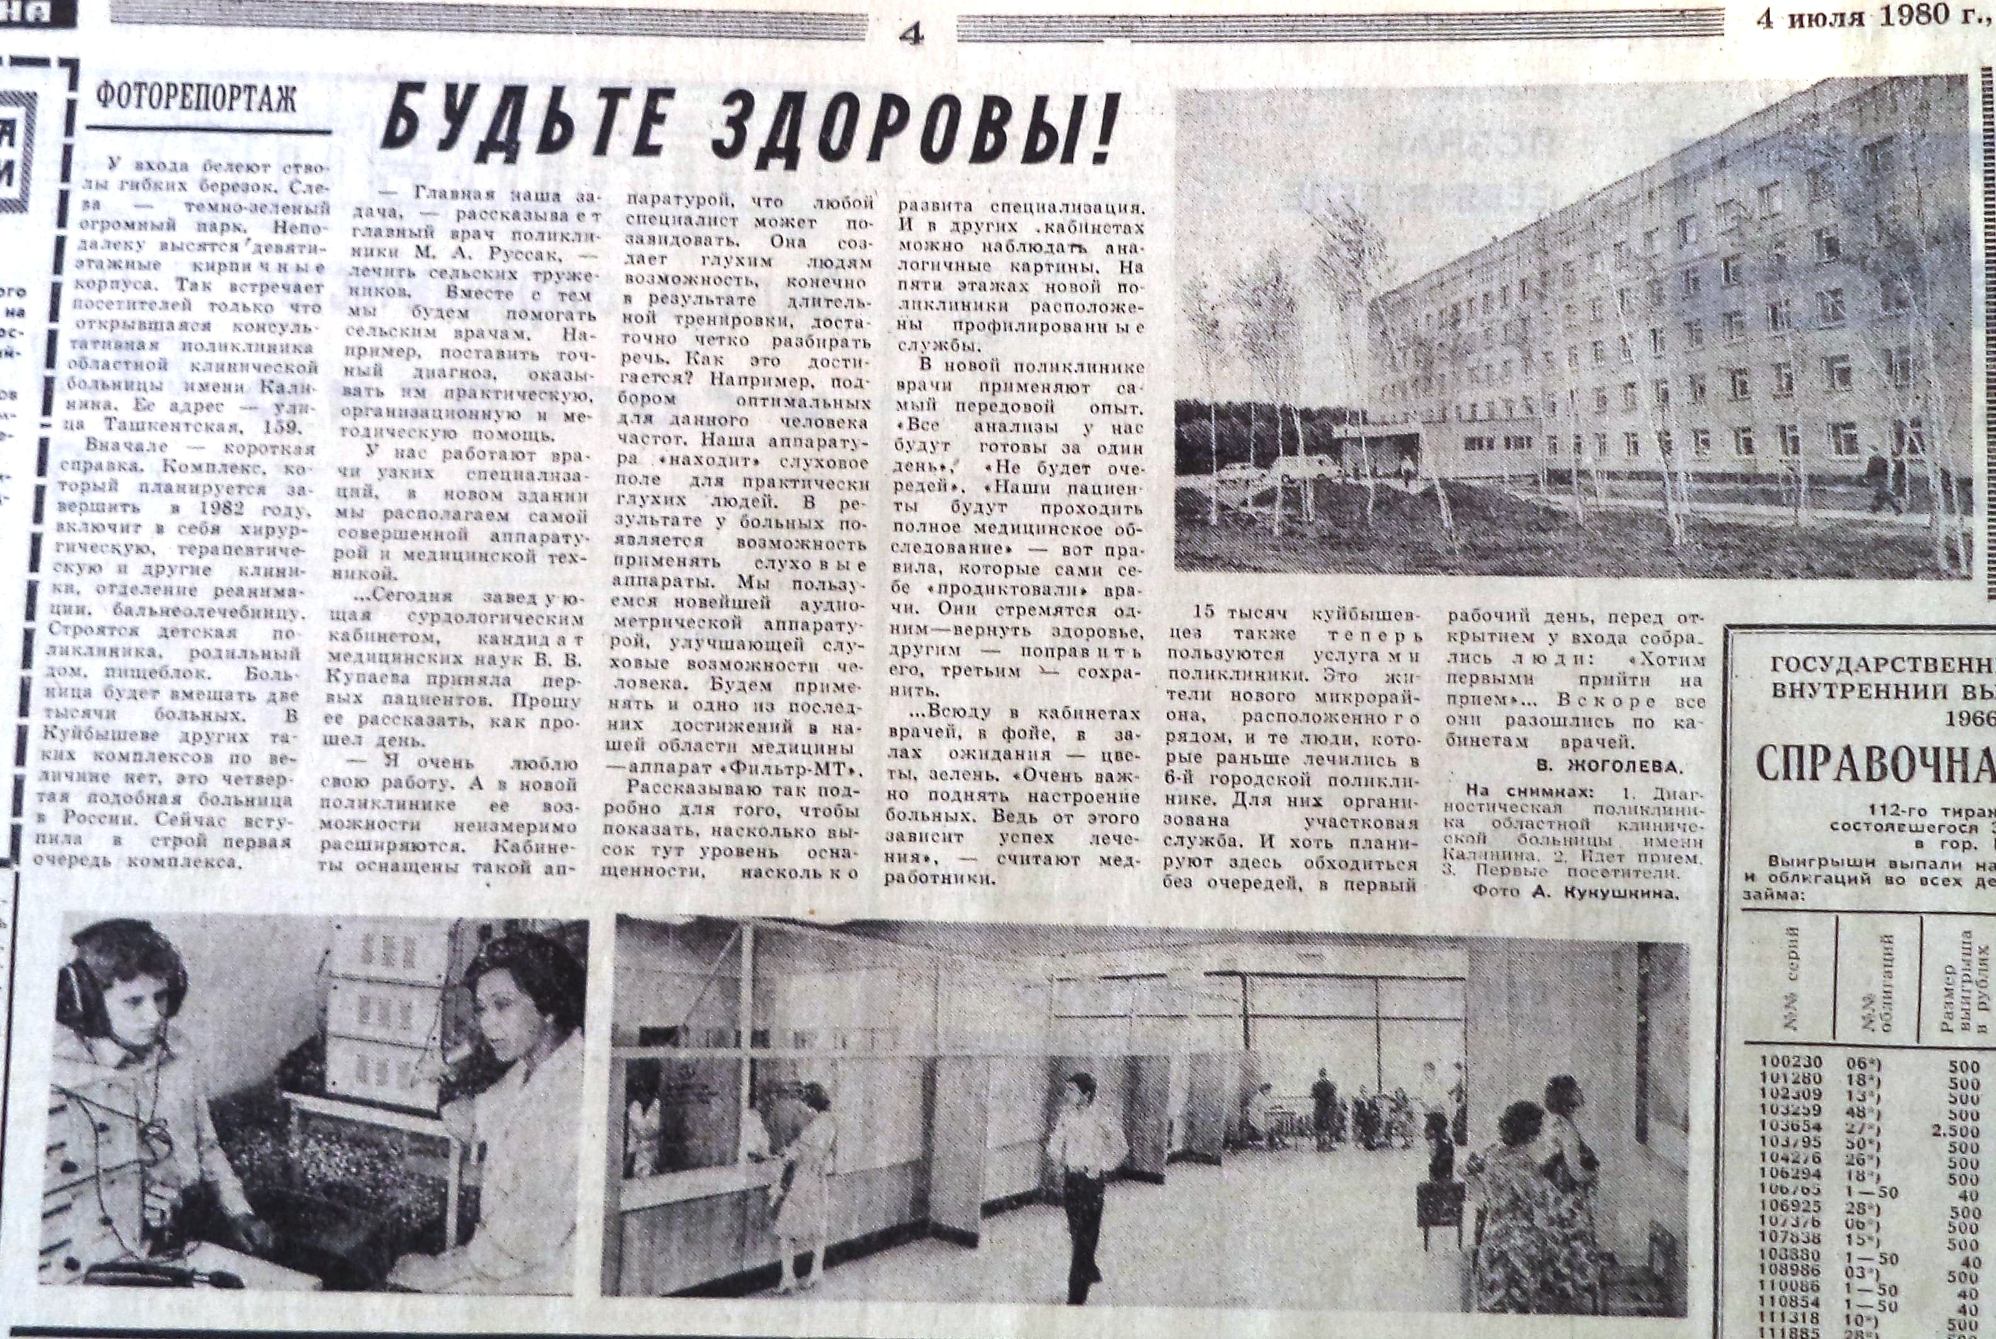 Ташкентская-ФОТО-64-ВКа-1980-07-04-открытие обл. клин. б-цы-min